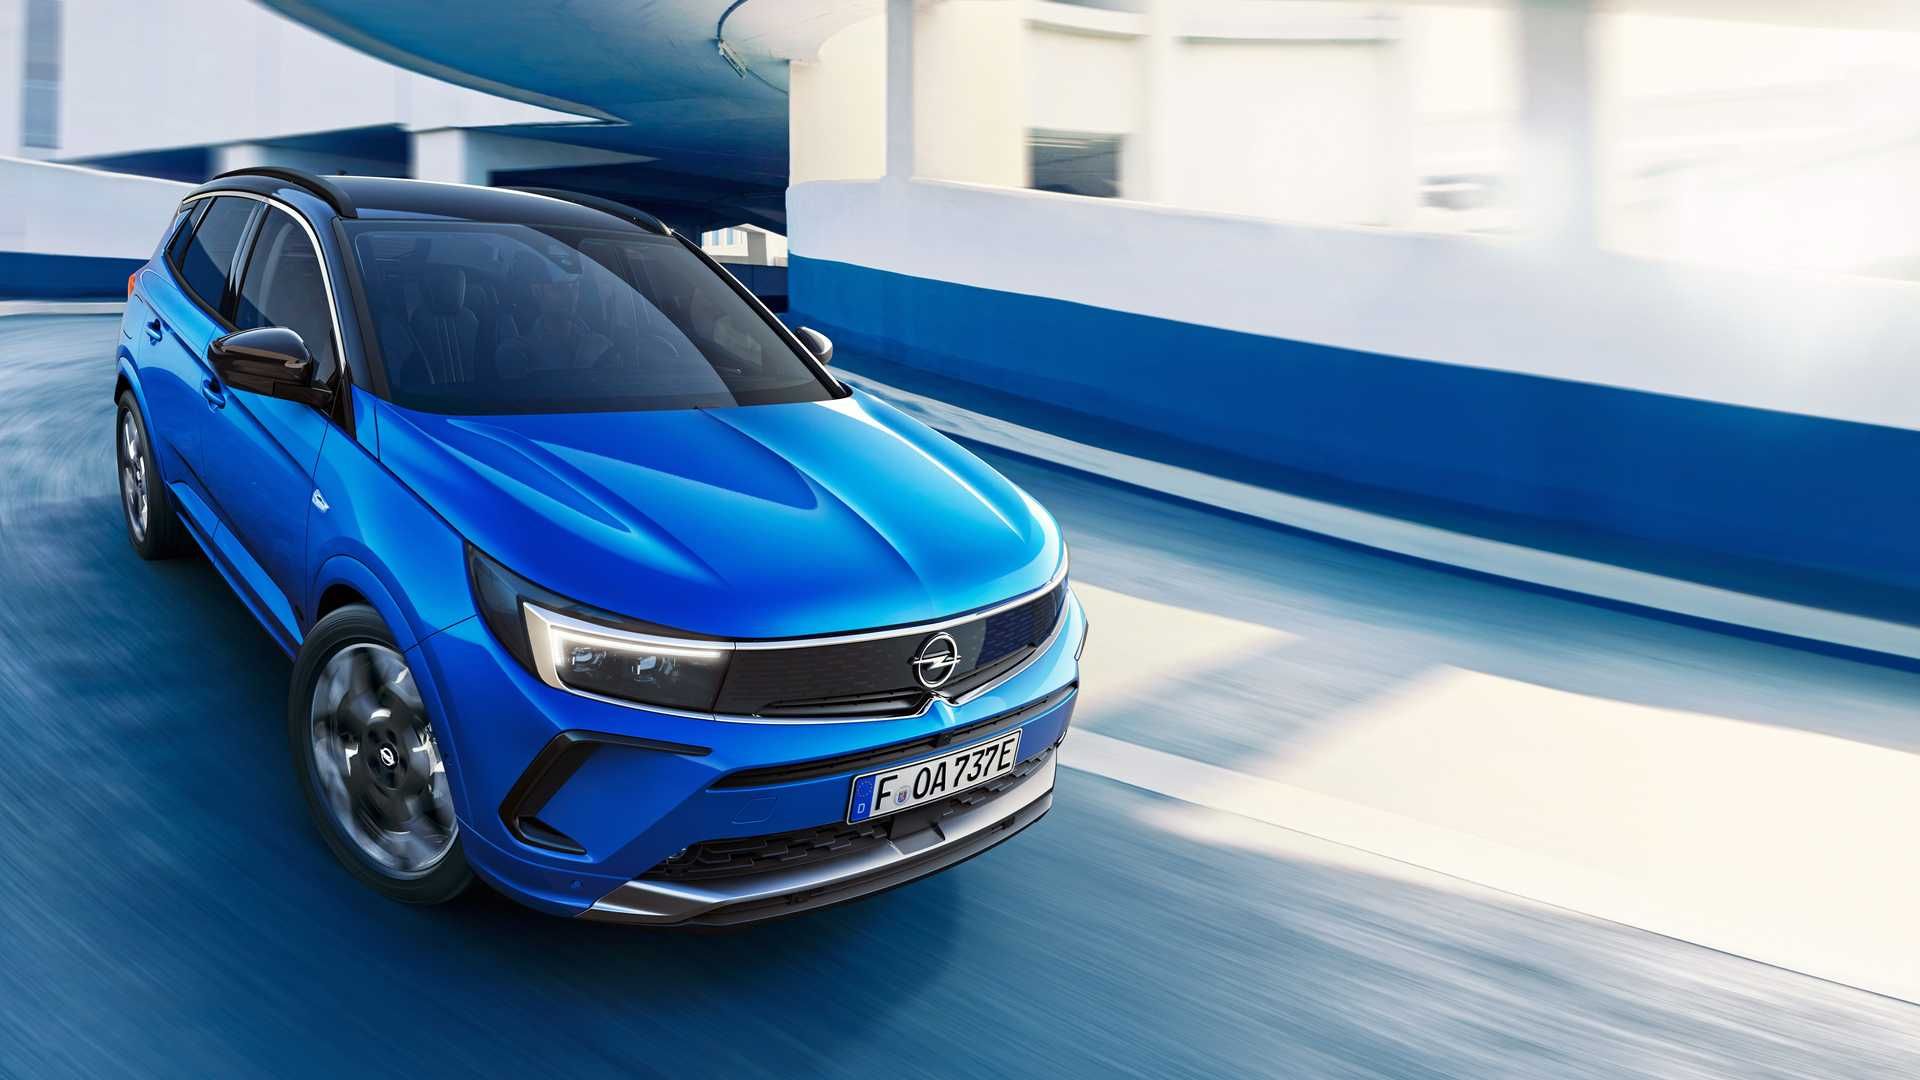 نمای جلو فیس لیفت کراس اور اوپل گرندلند 2022 / 2022 Opel Grandland crossover آبی رنگ